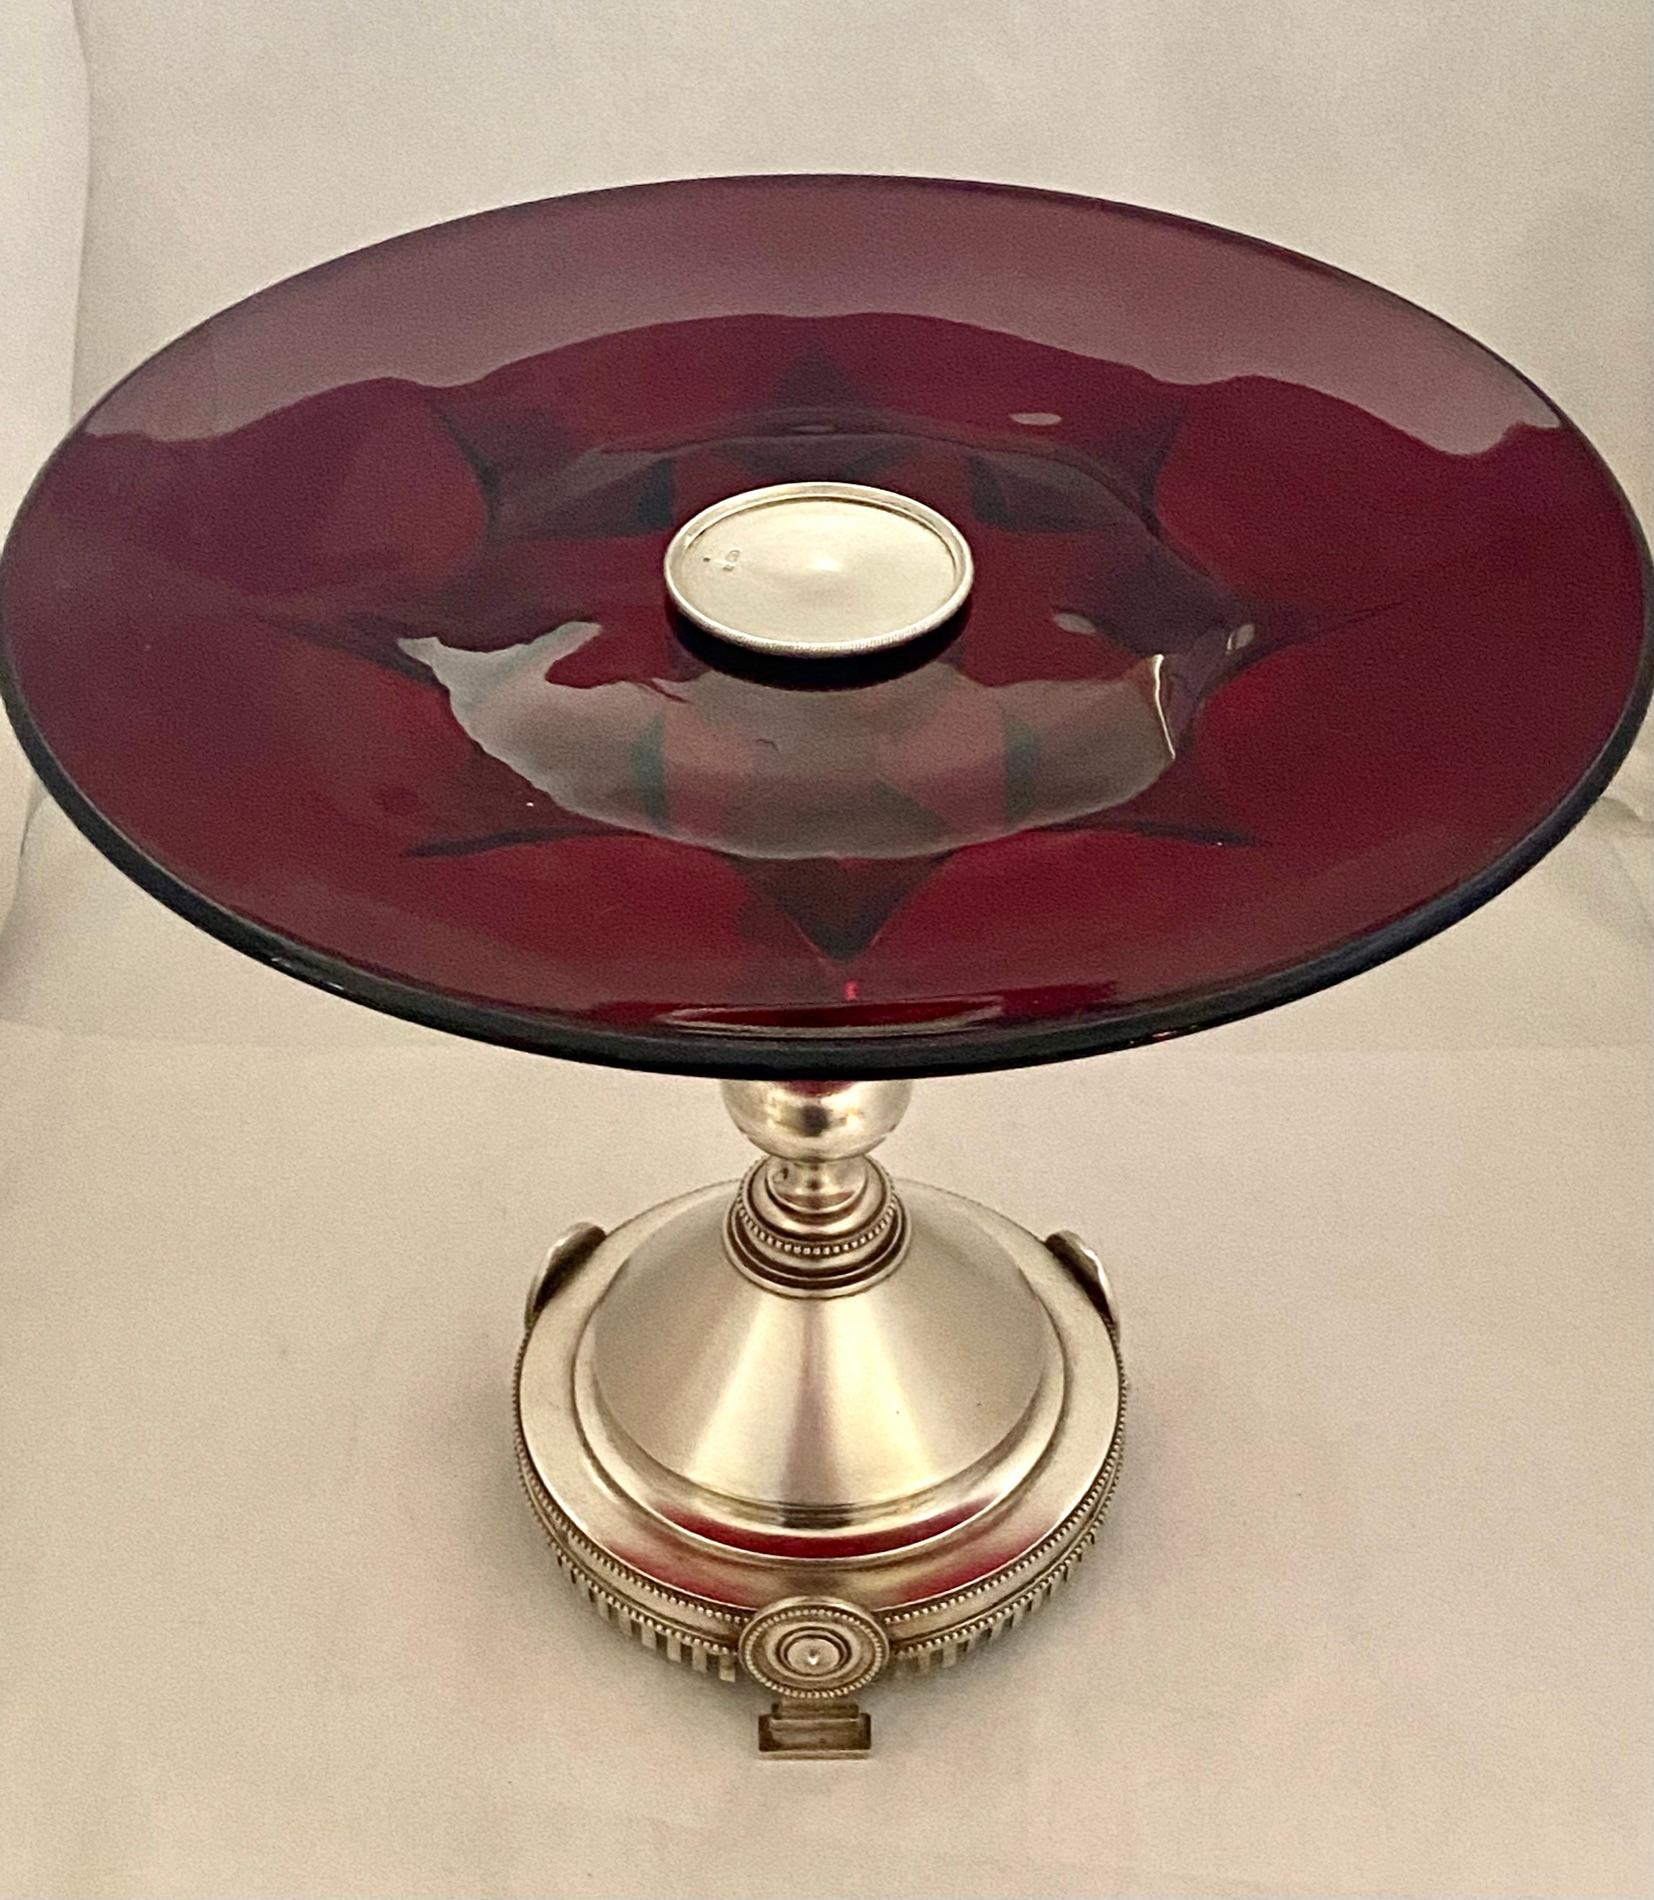 Un centre de table en argent 875/000 (84 Zolotniks) composé d'une base et d'une tige en argent avec un bol rond en verre rouge.
Hauteur de la pièce centrale : 24,5 cm. Diamètre du verre rouge : 28 cm. diamètre de la base en argent : 13 cm. Poids de